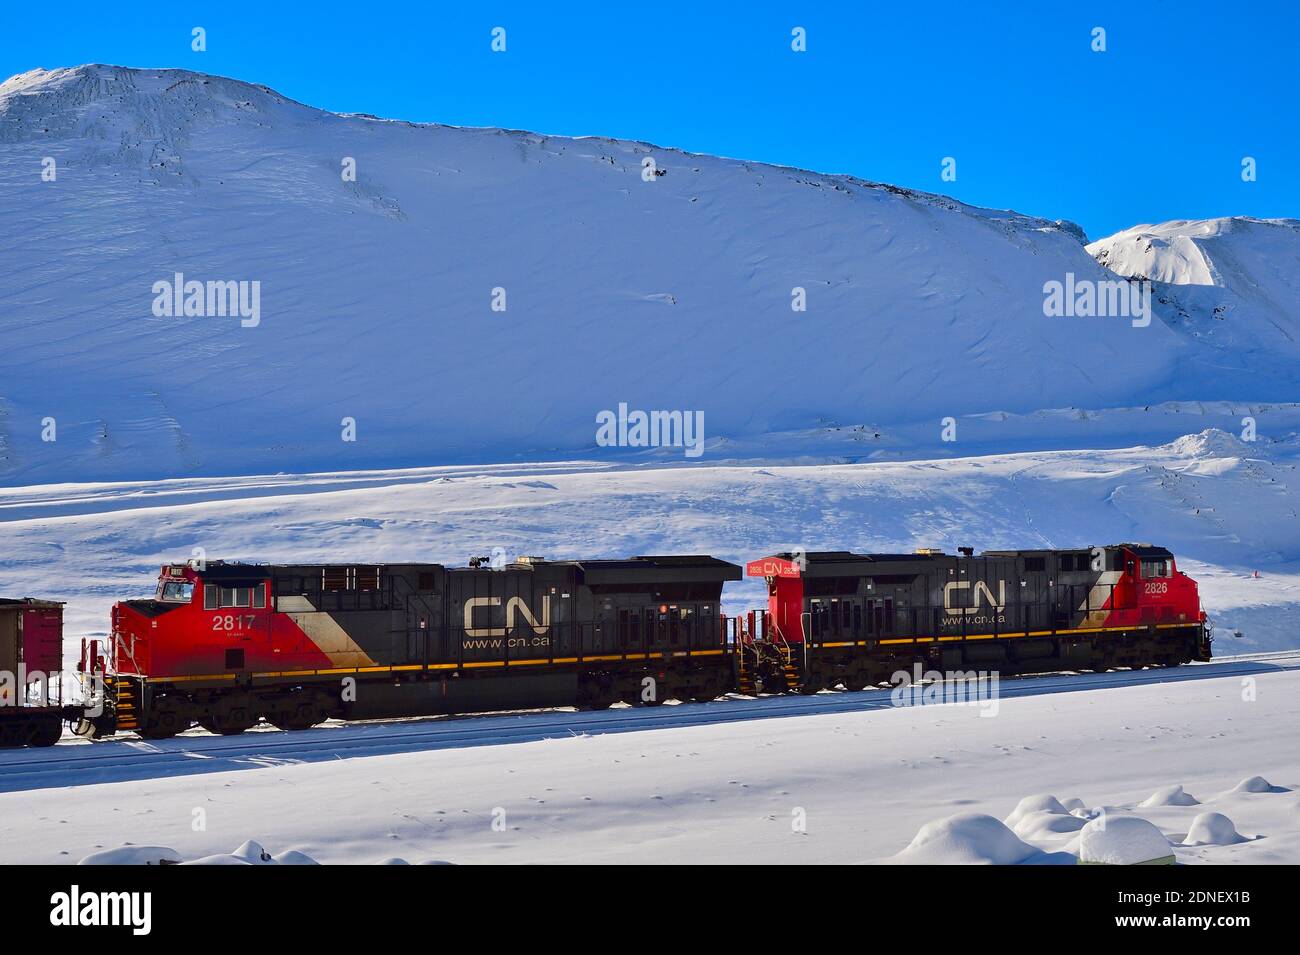 Motores de trenes nacionales canadienses esperando en una vía de trenes en la nieve profunda del invierno en las zonas rurales de Alberta, Canadá. Foto de stock